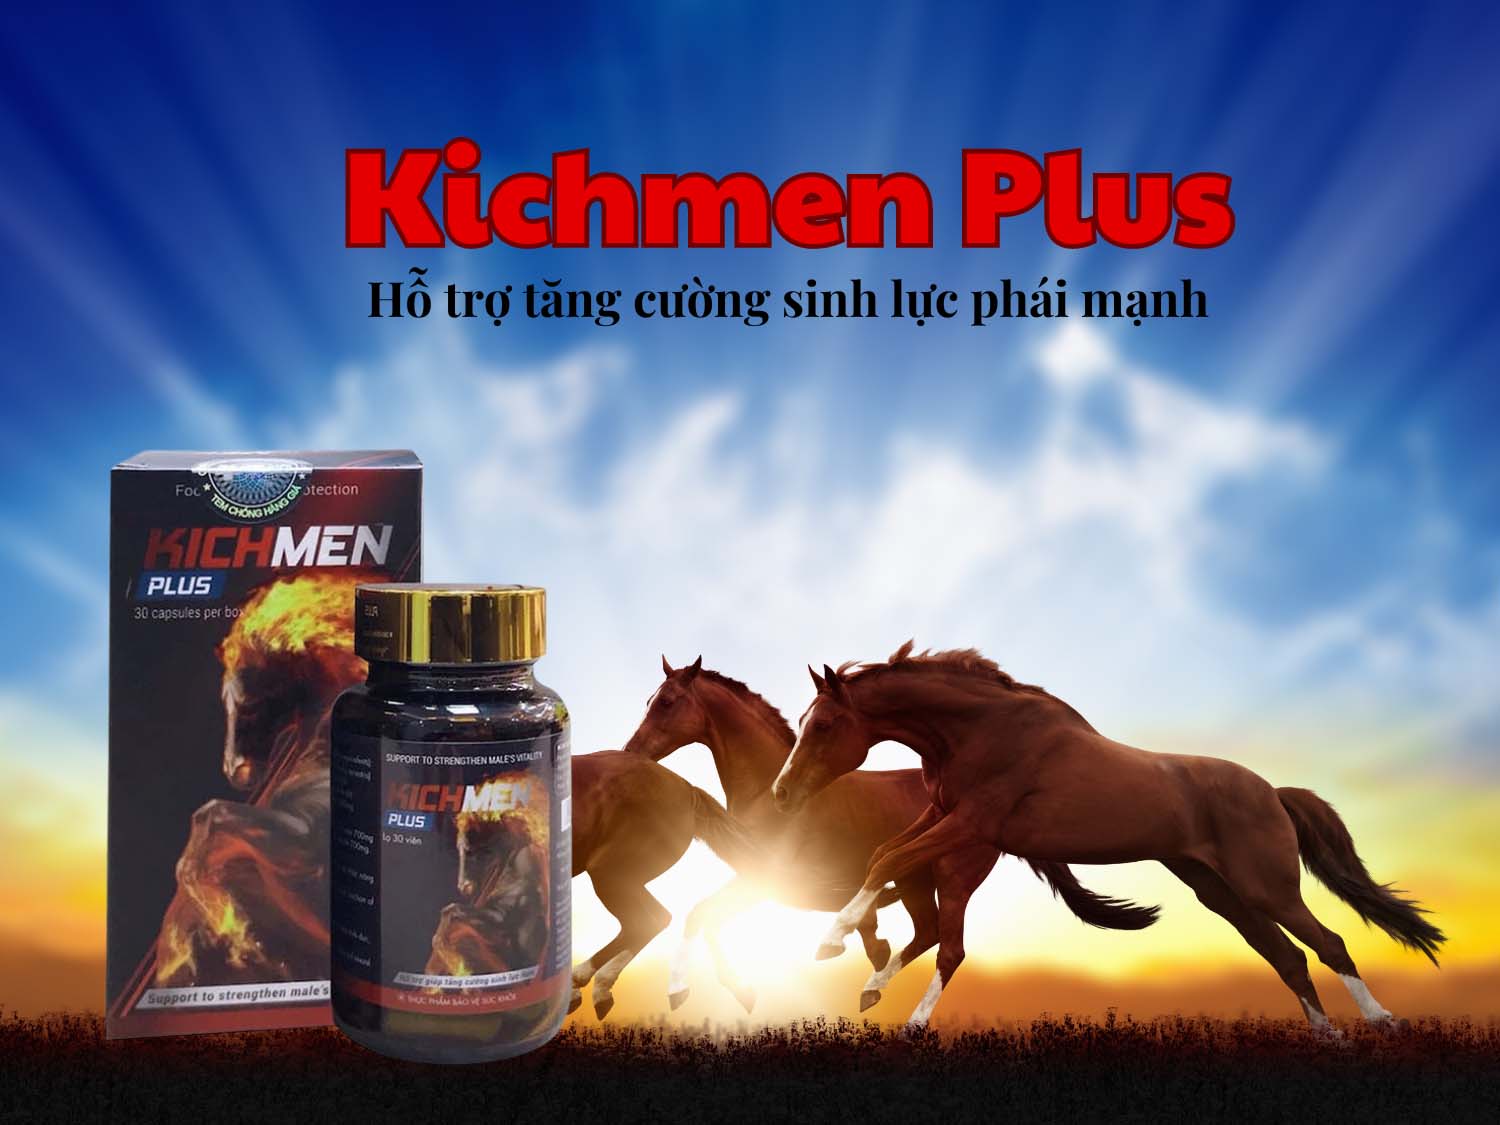 Kichmen Plus (Hộp 30 viên) - Tăng cường sinh lực phái mạnh